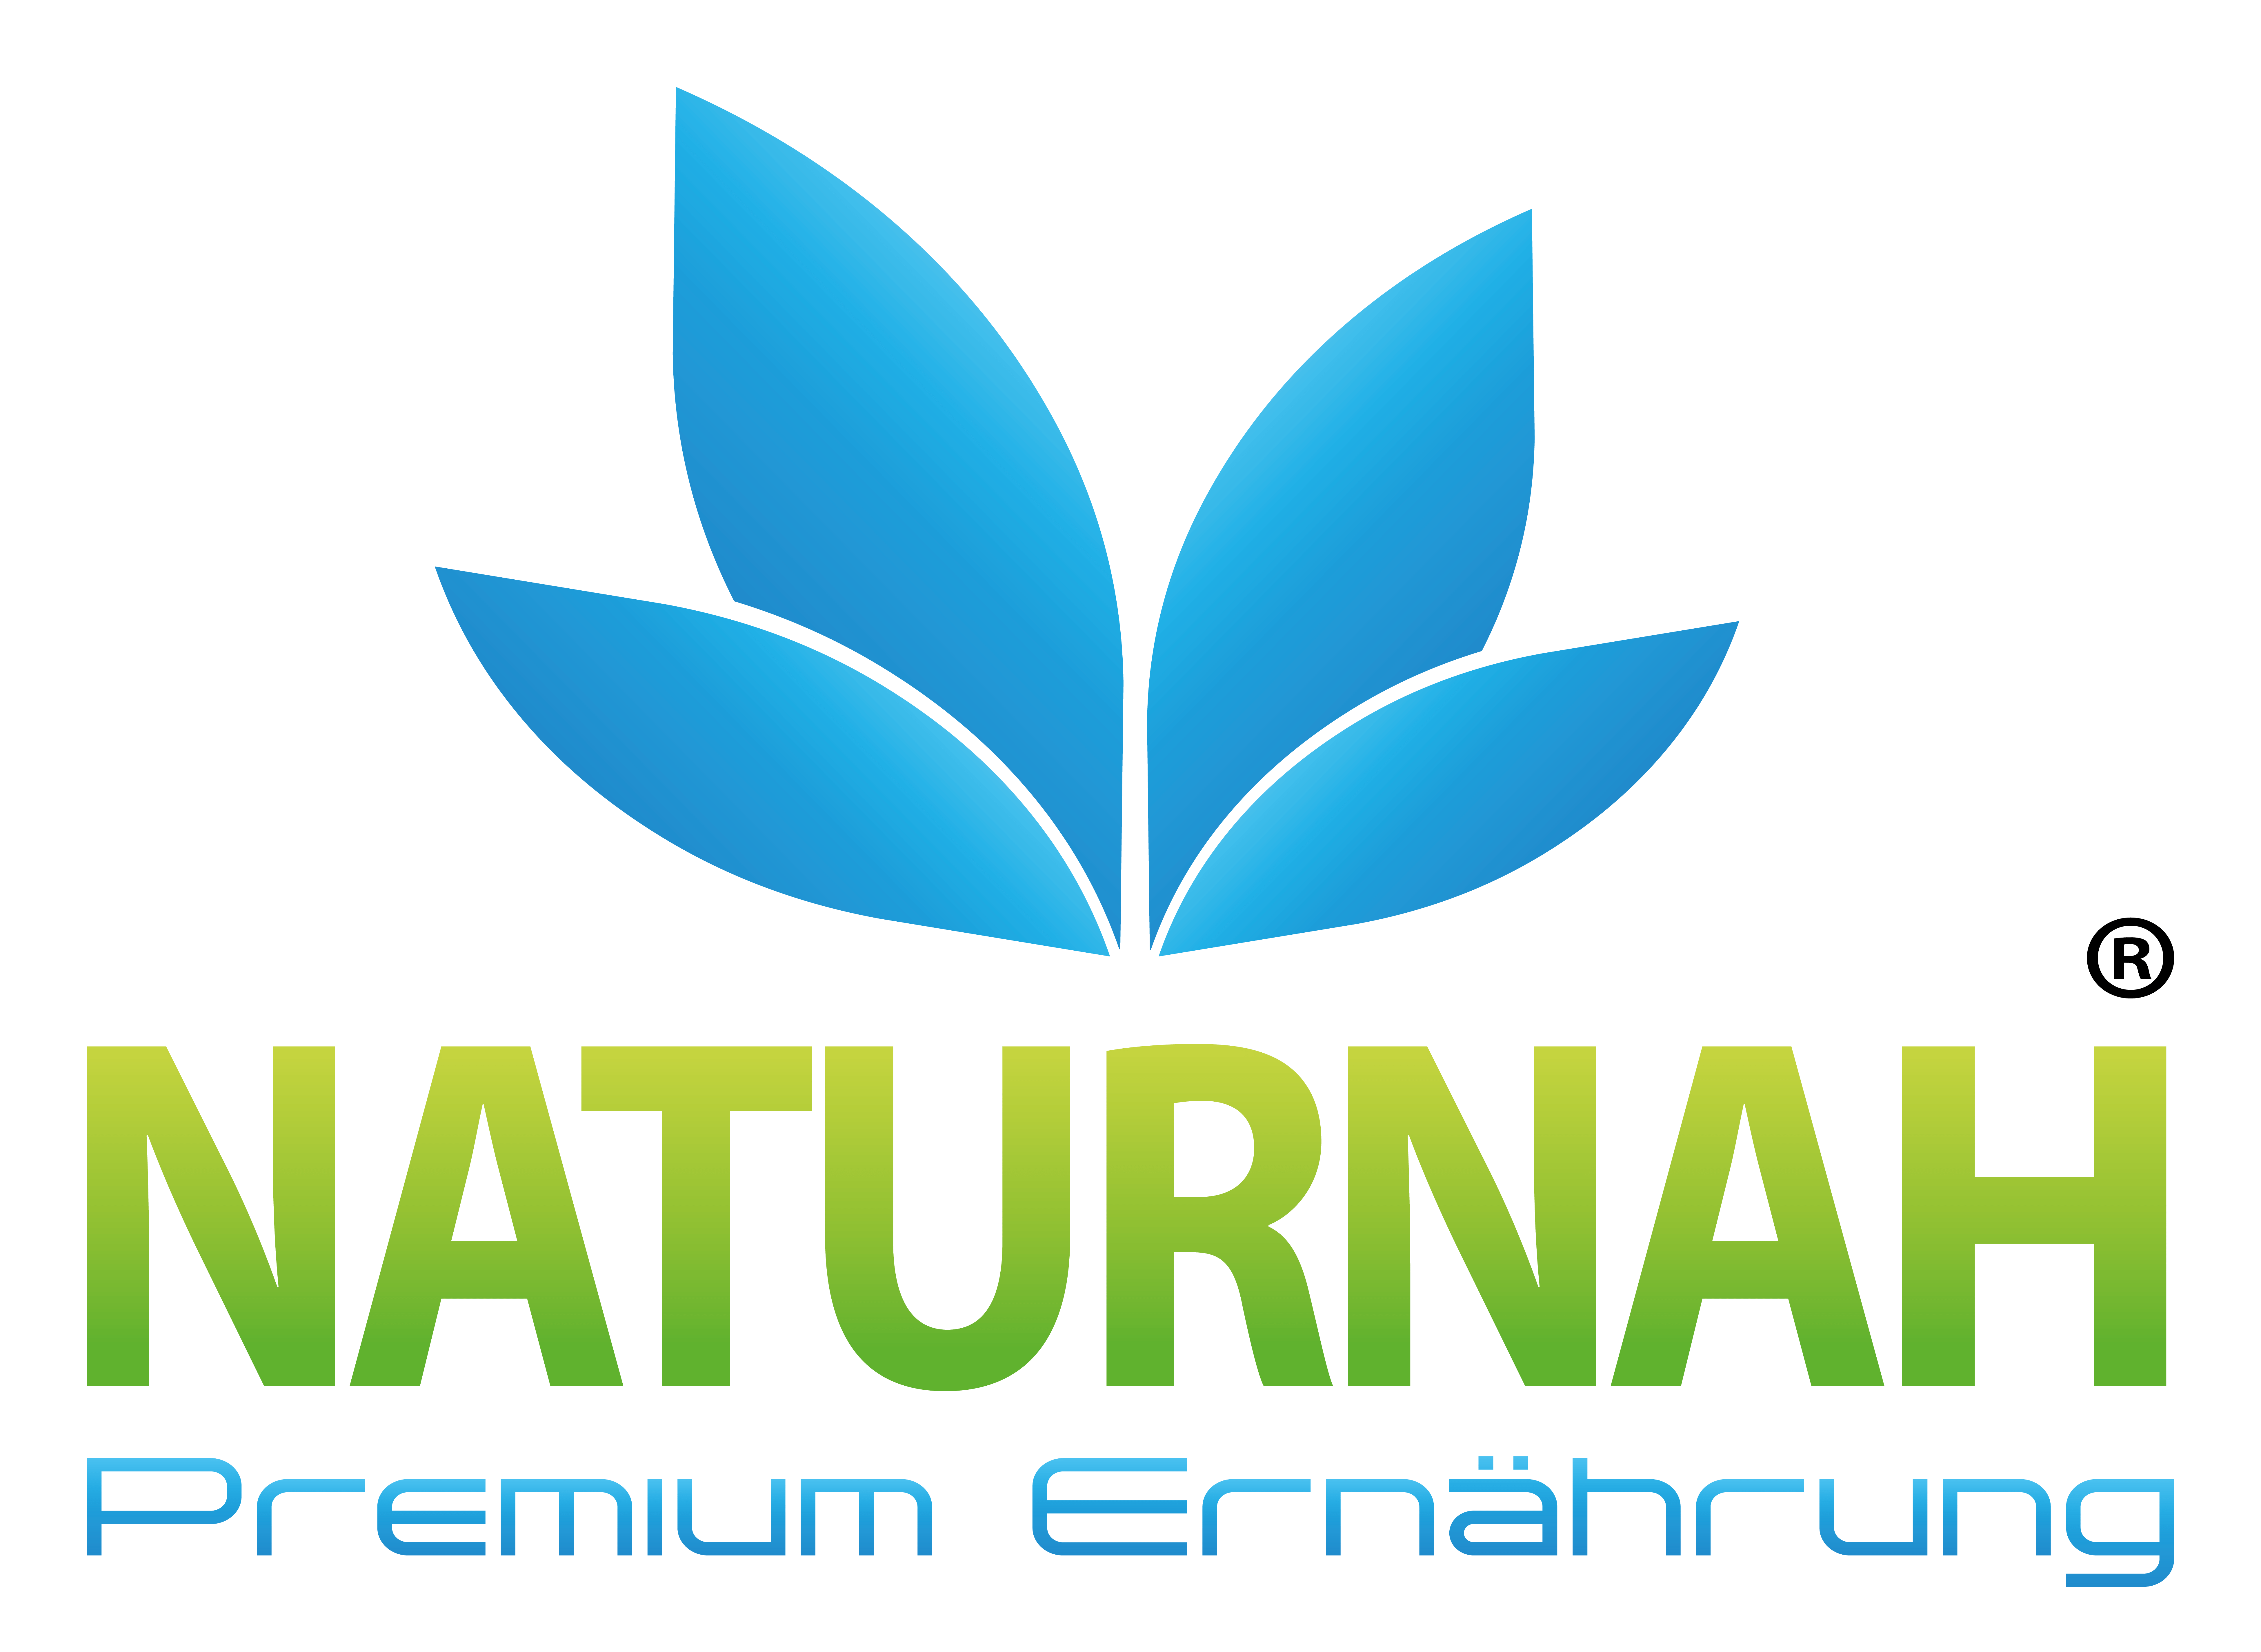 NATURNAH® - Premium Ernährung eine Marke der 2N-Naturprodukte GmbH